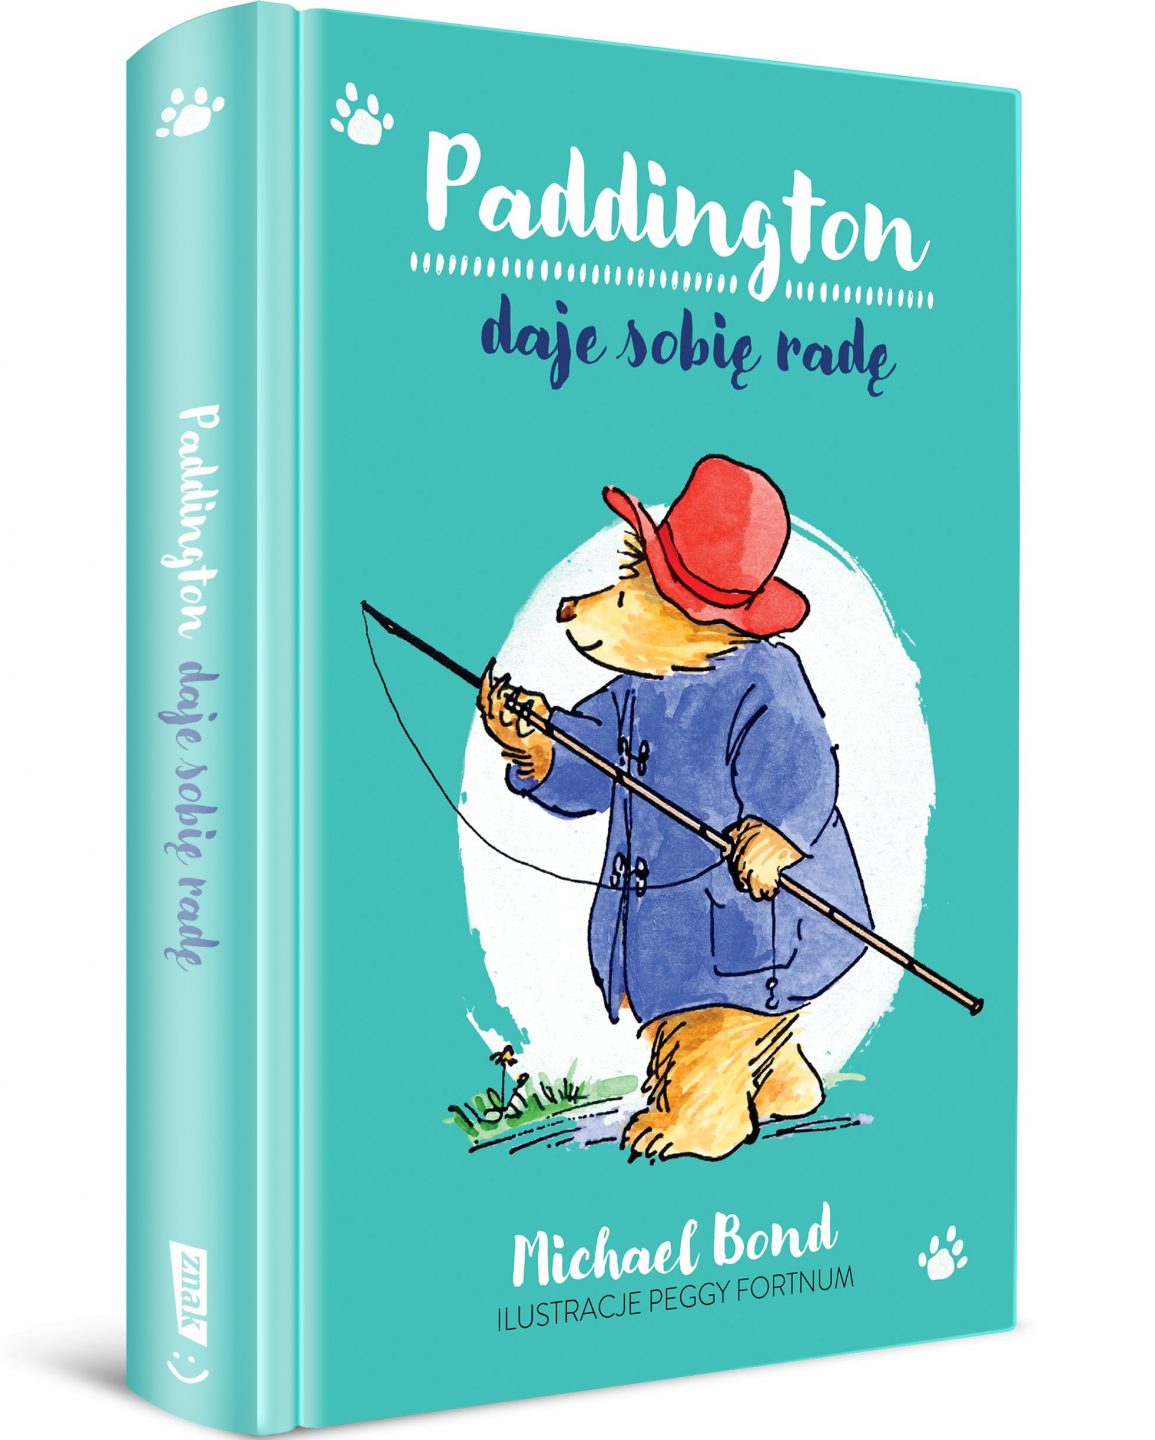 Okładka książki: Paddington daje sobie radę